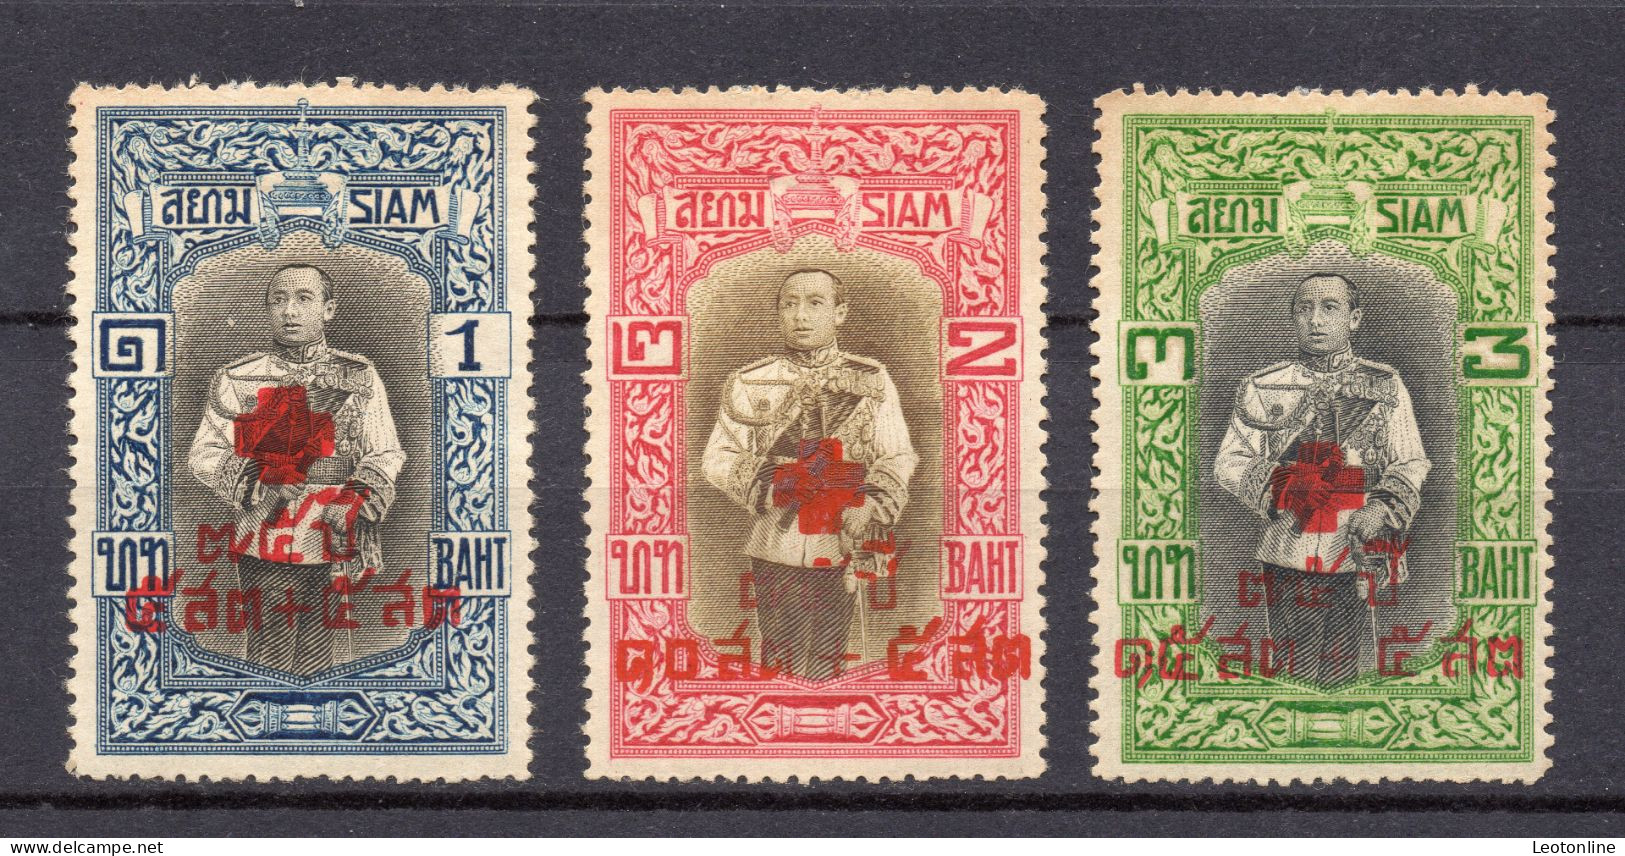 SIAM - THAILAND 1939 - YVERT 221/223 CROIX ROUGE - B31/B33 NUEVOS CON SEÑAL - MH - Siam